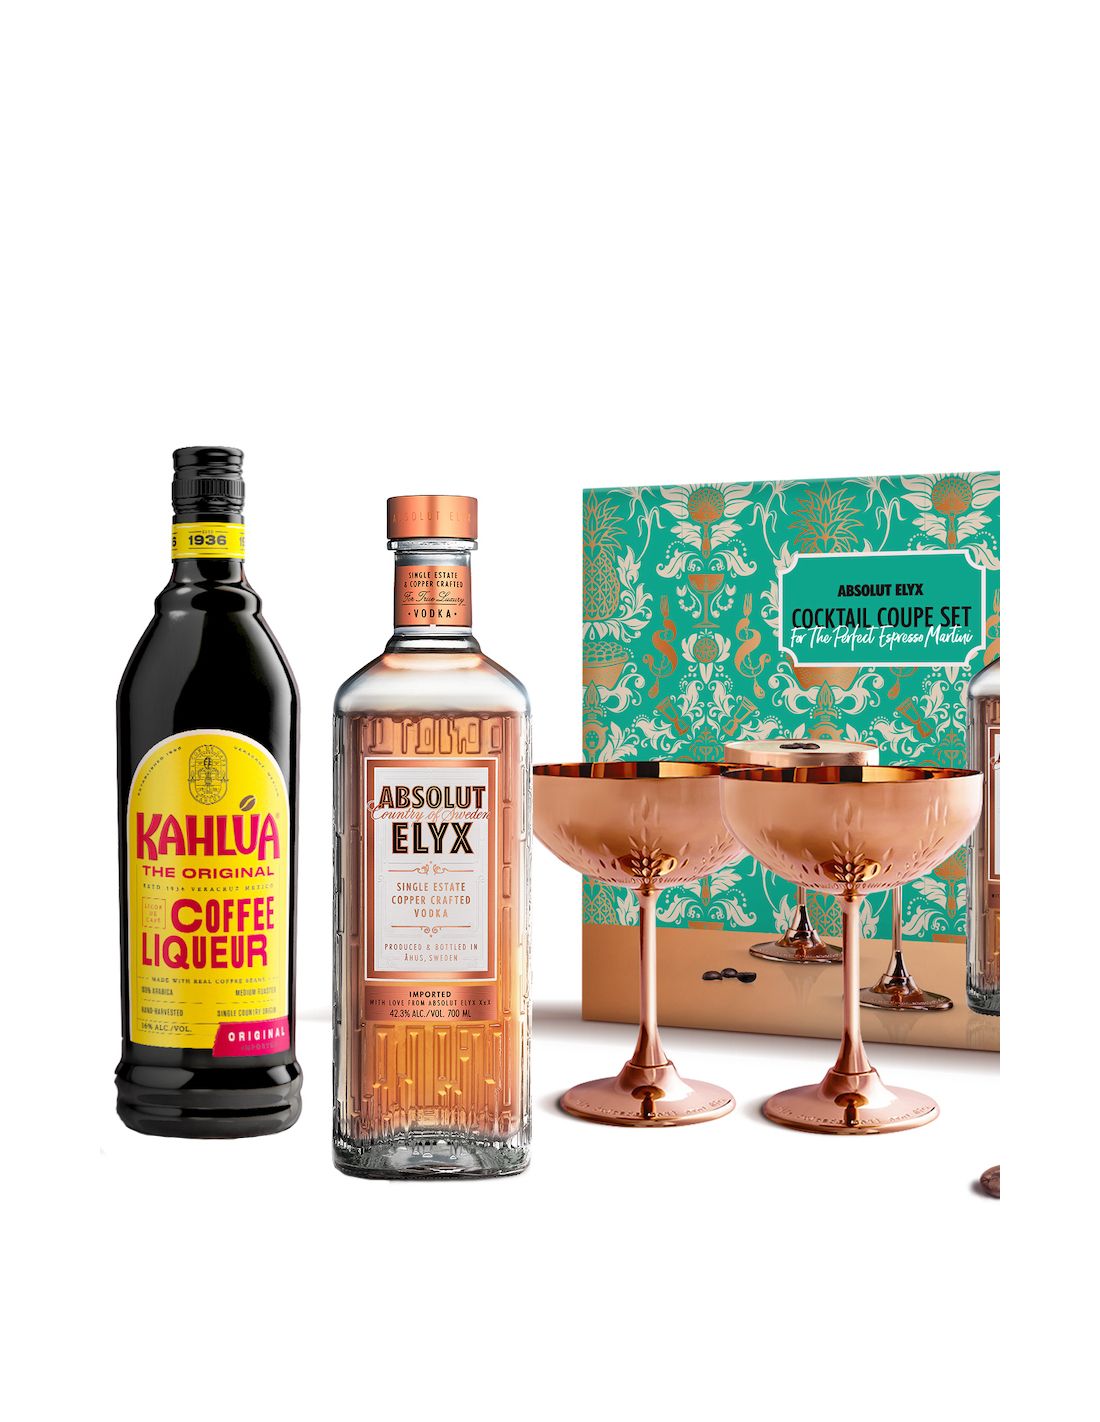 Cocktail Kits -  Sweden